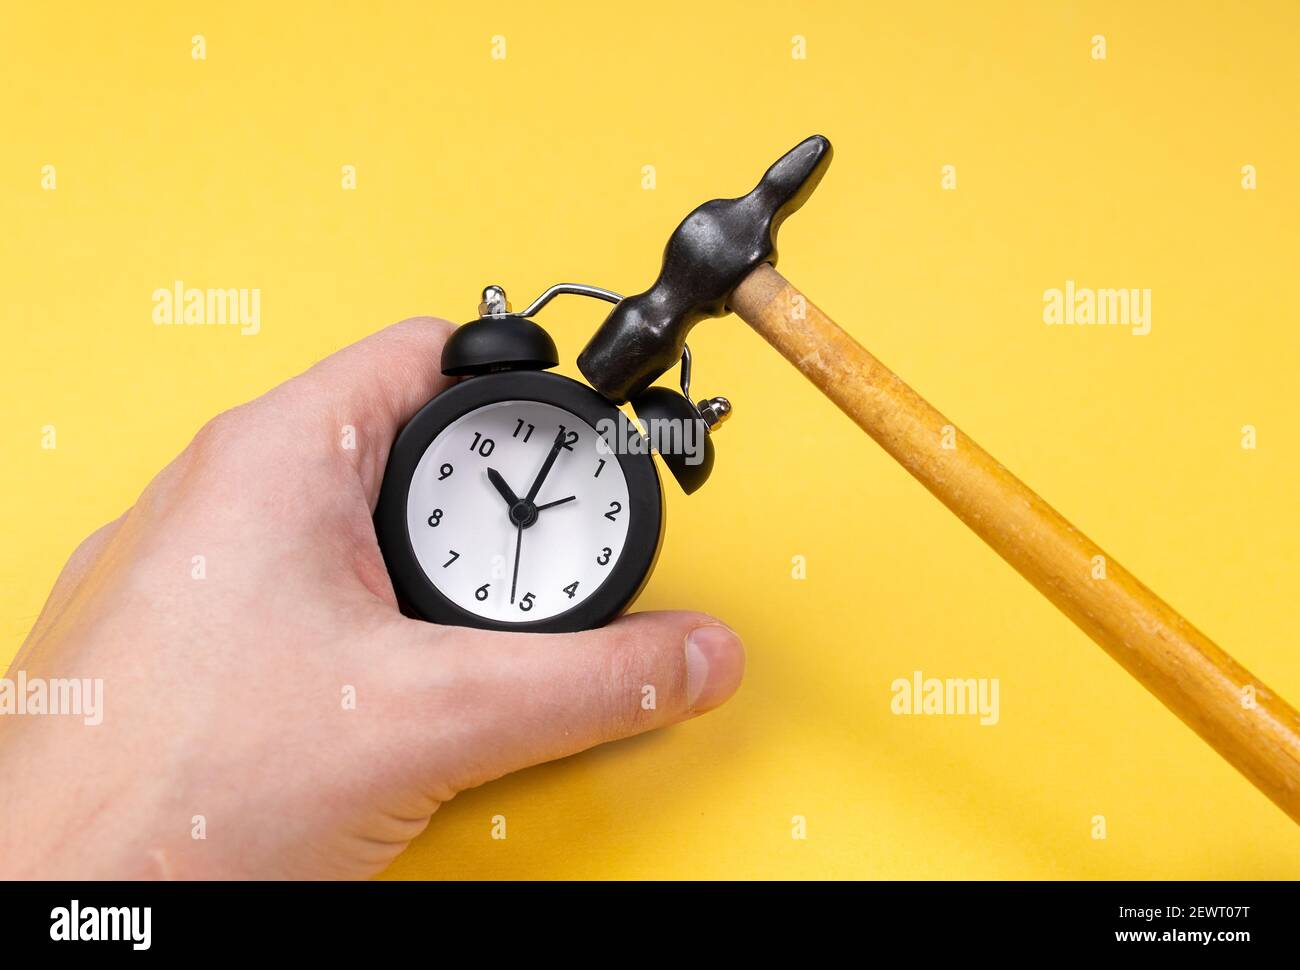 Réveil avec marteau concept pour dormir, fatigué, épuisé ou se réveiller.  Sur fond jaune Photo Stock - Alamy